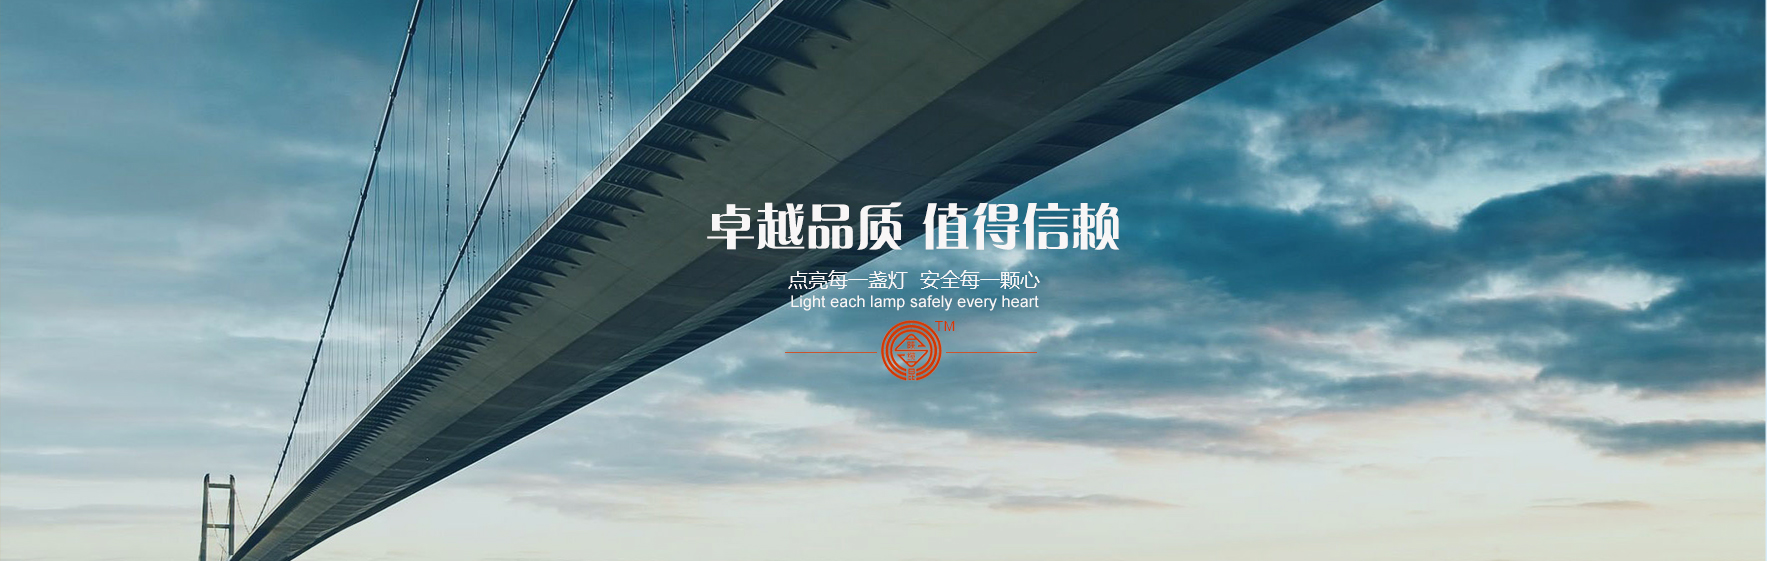 凯发网站·(china)集团 | 科技改变生活_活动1247